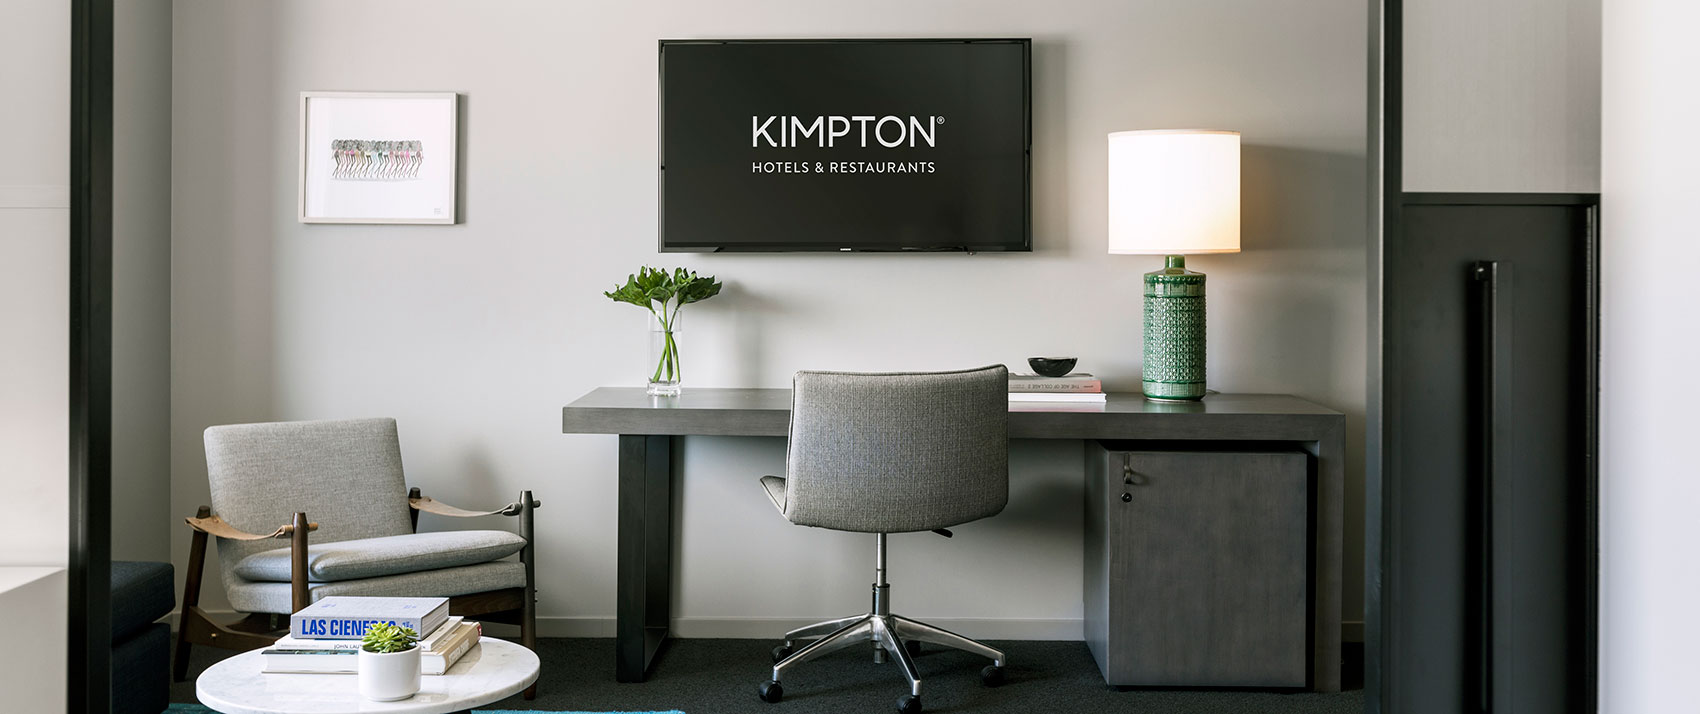 Contact Kimpton